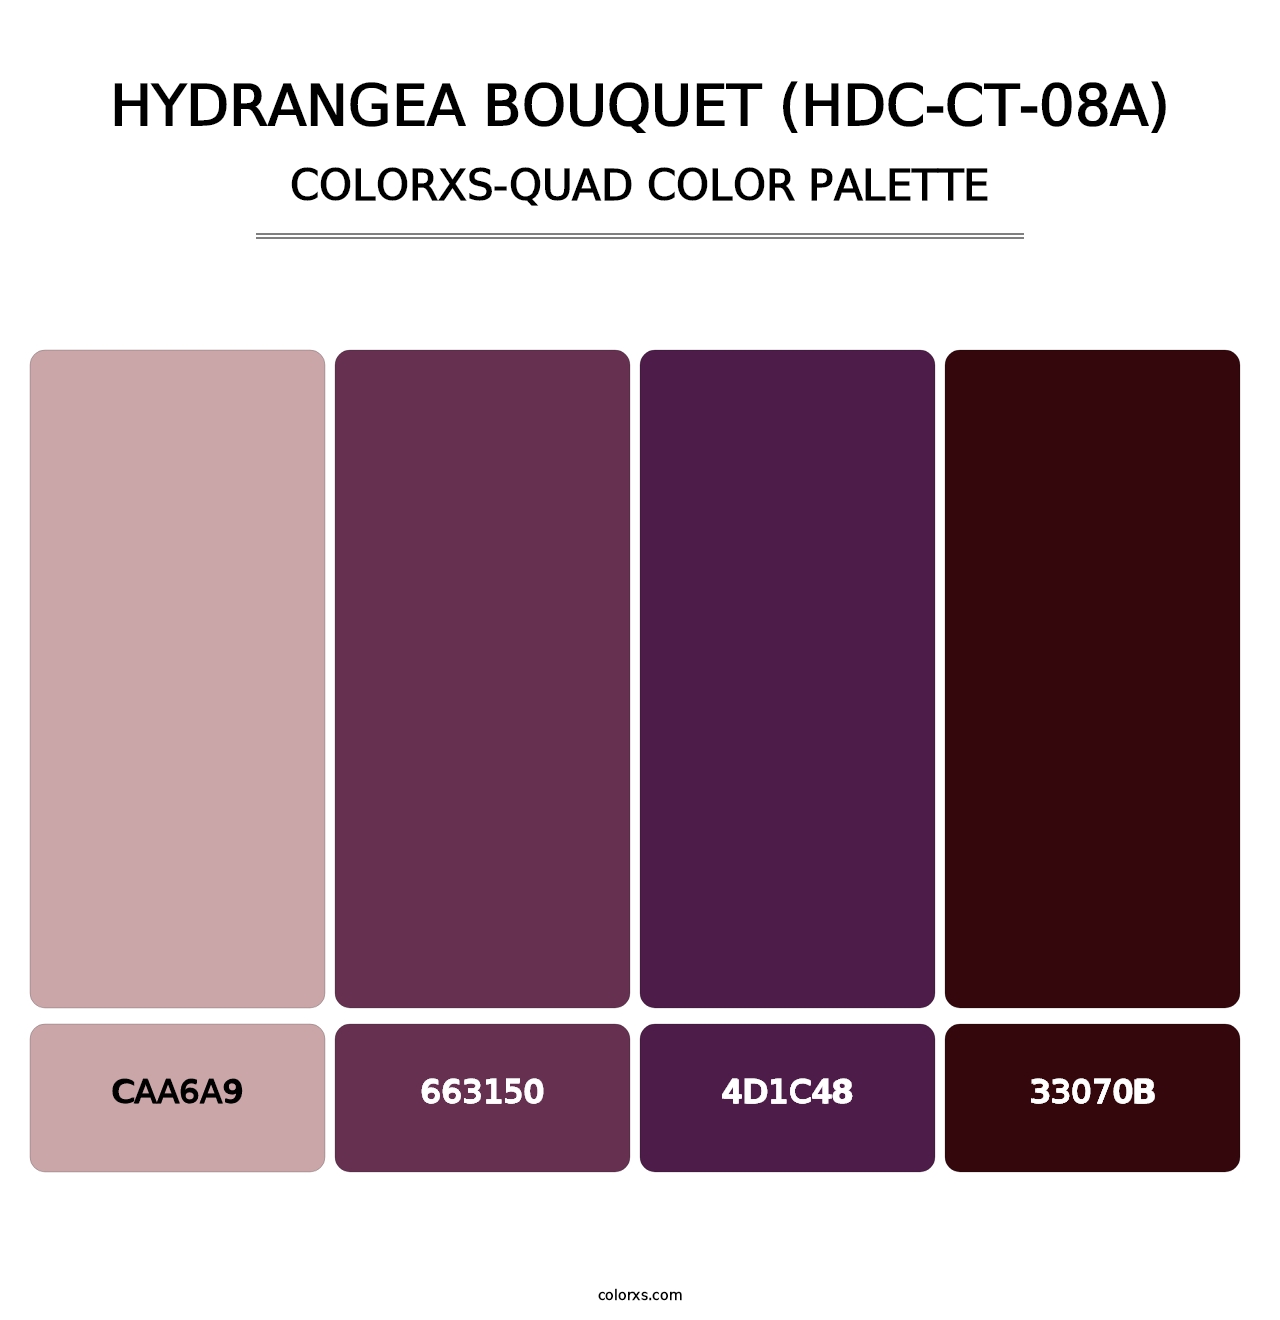 Hydrangea Bouquet (HDC-CT-08A) - Colorxs Quad Palette